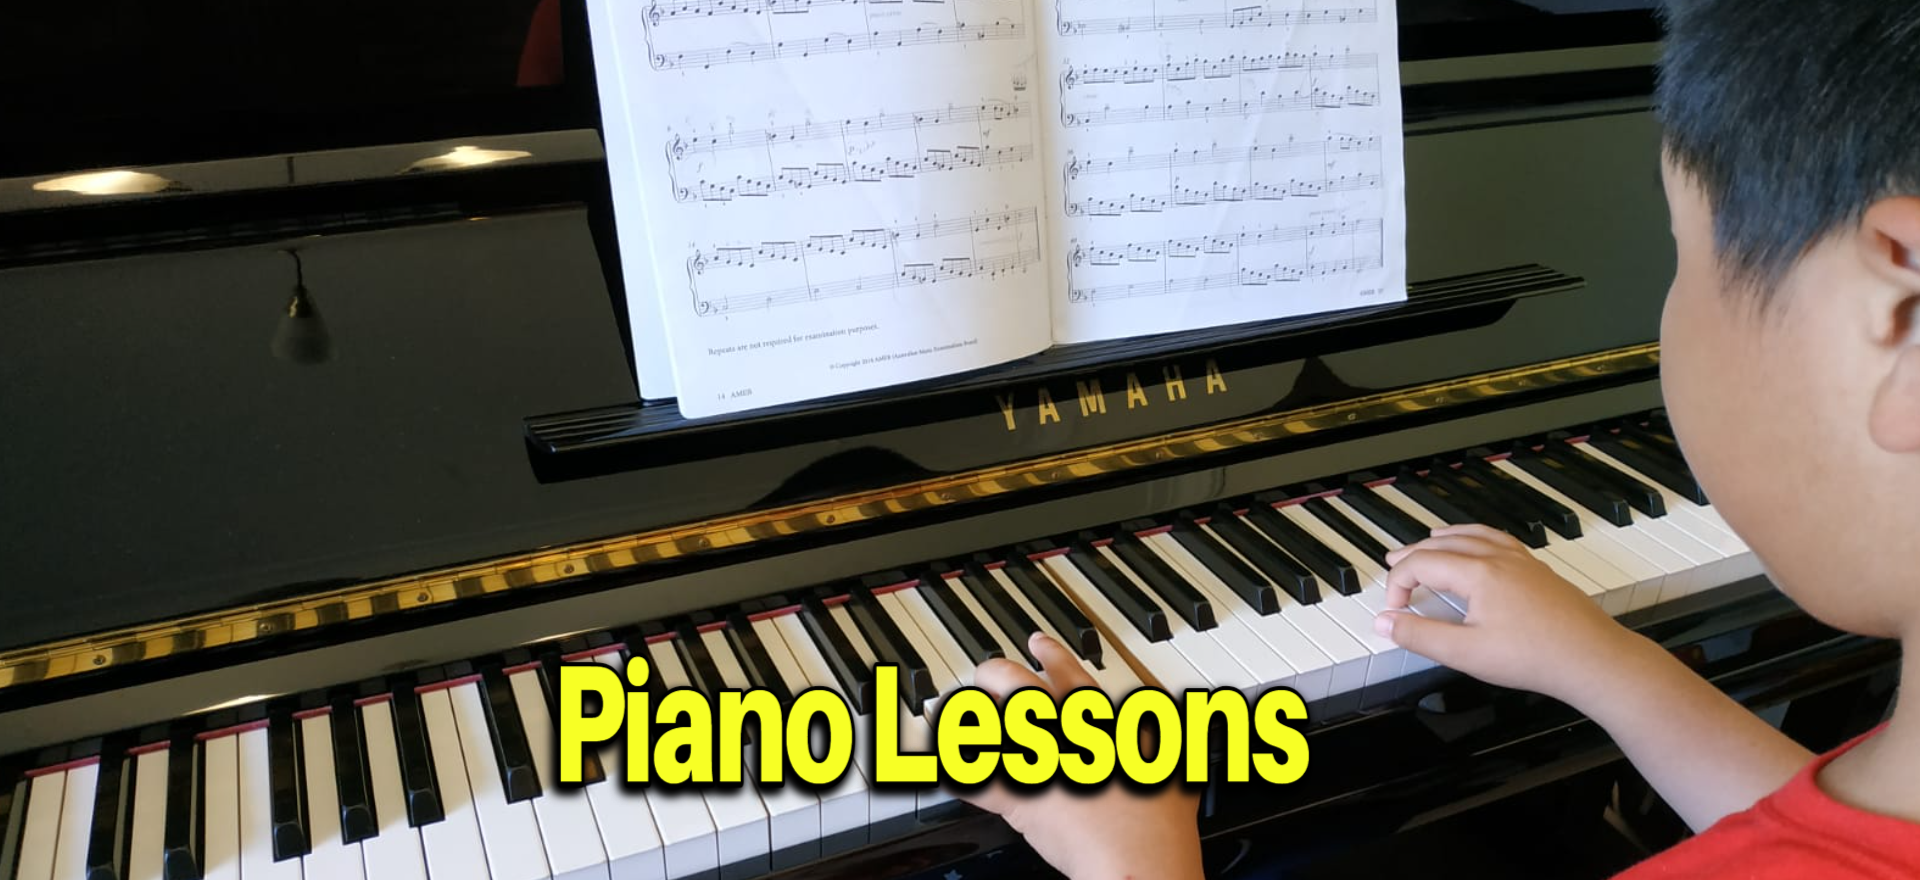 Piano Lessons in Progress